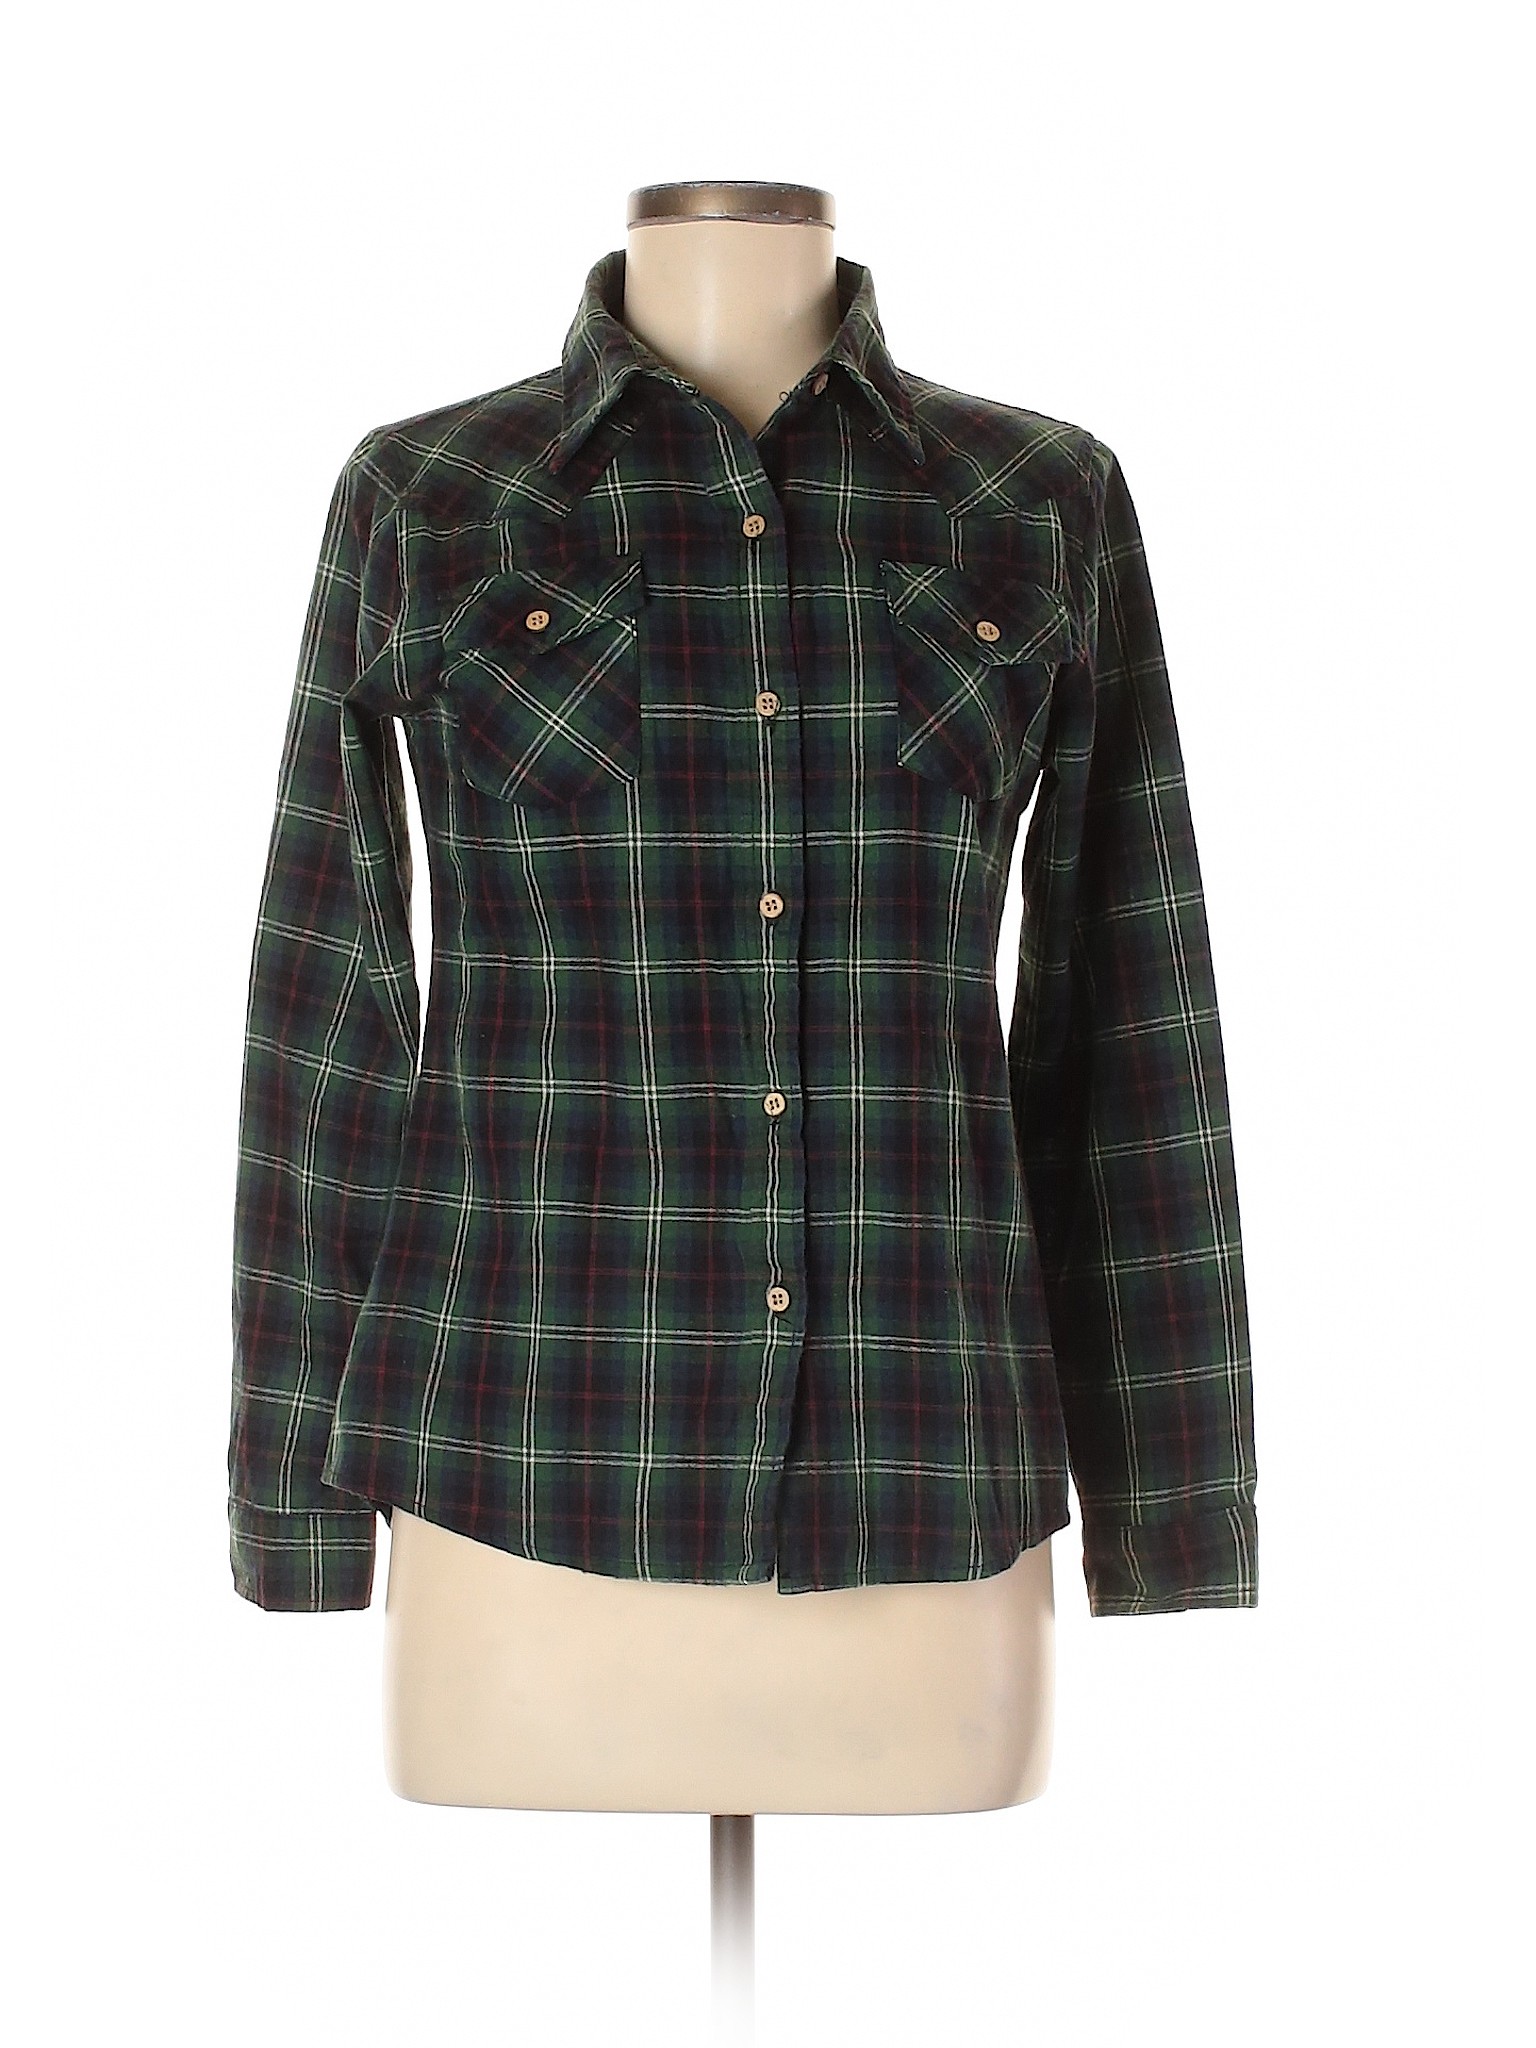 Assorted Brands Women Green Long Sleeve Button-Down Shirt M | eBay